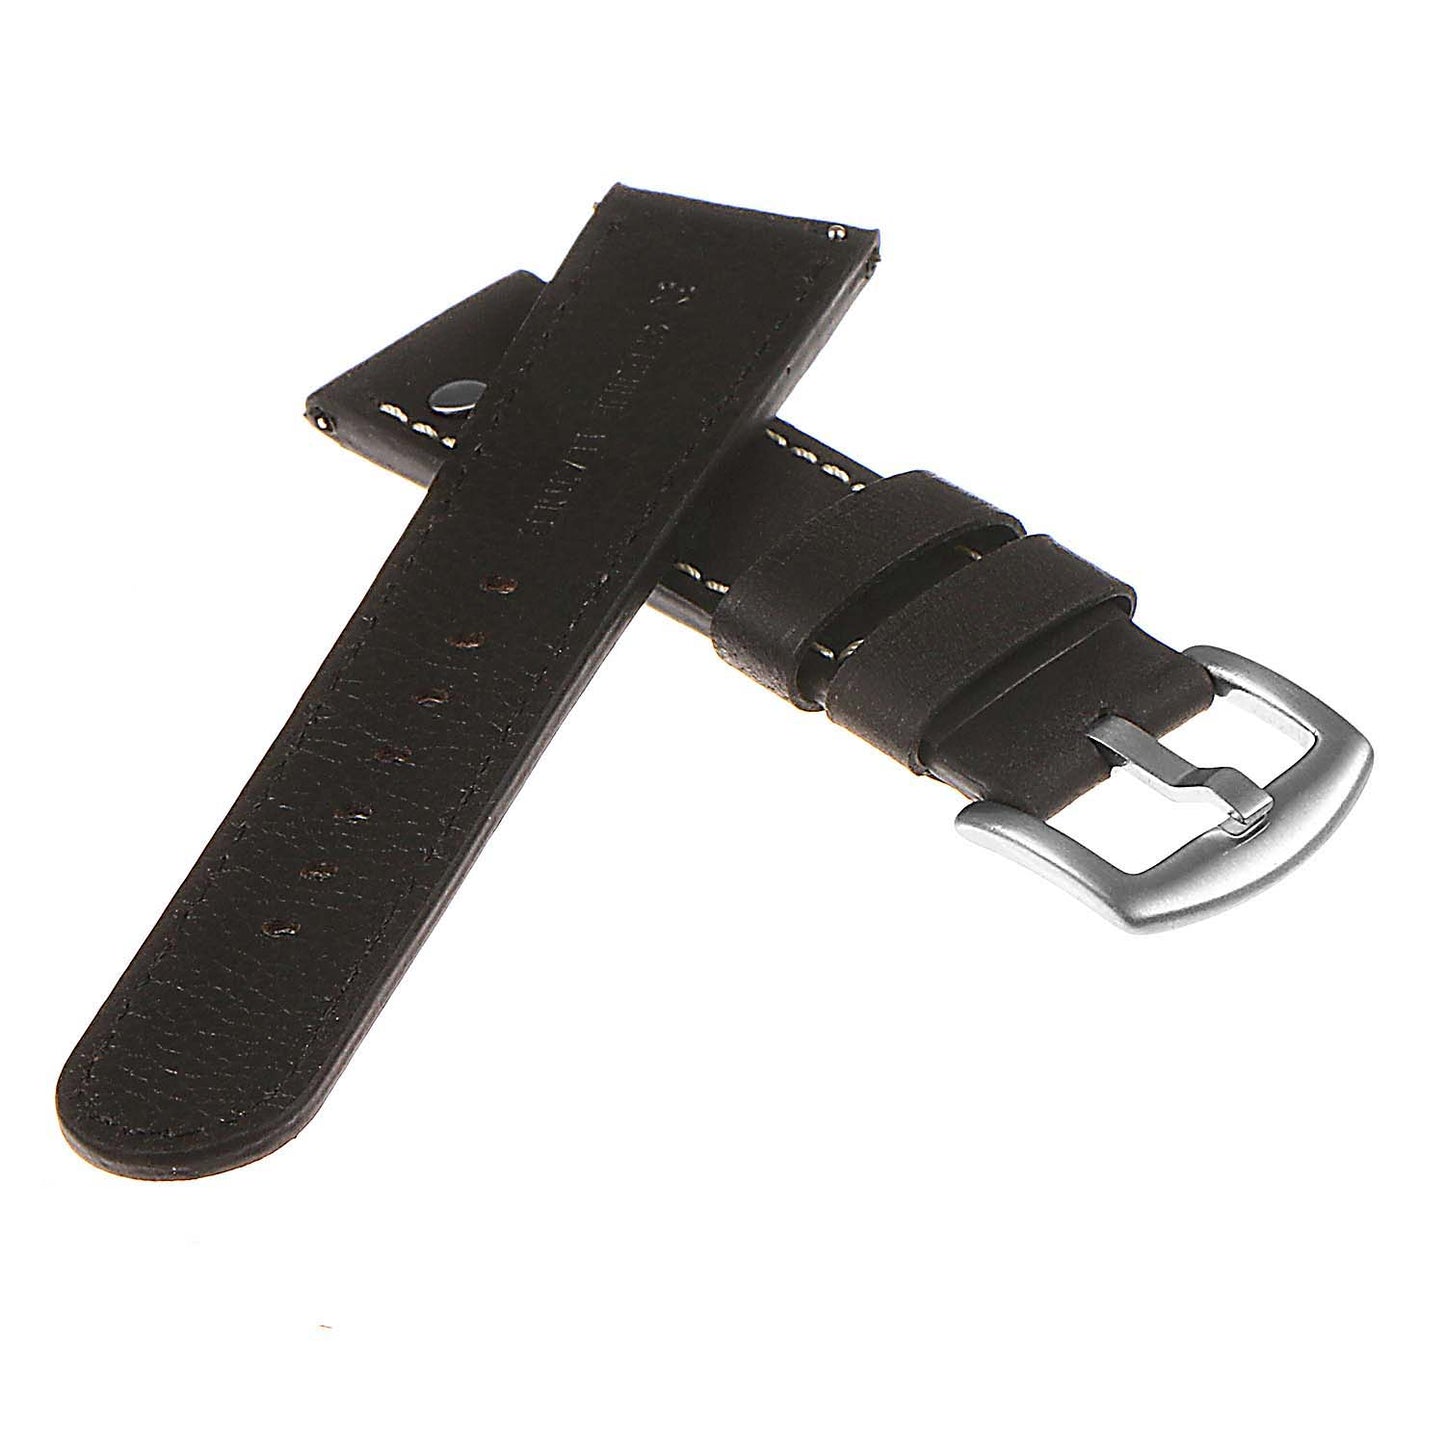 DASSARI Vintage Leather Pilot Strap w/ Rivets for Suunto 7